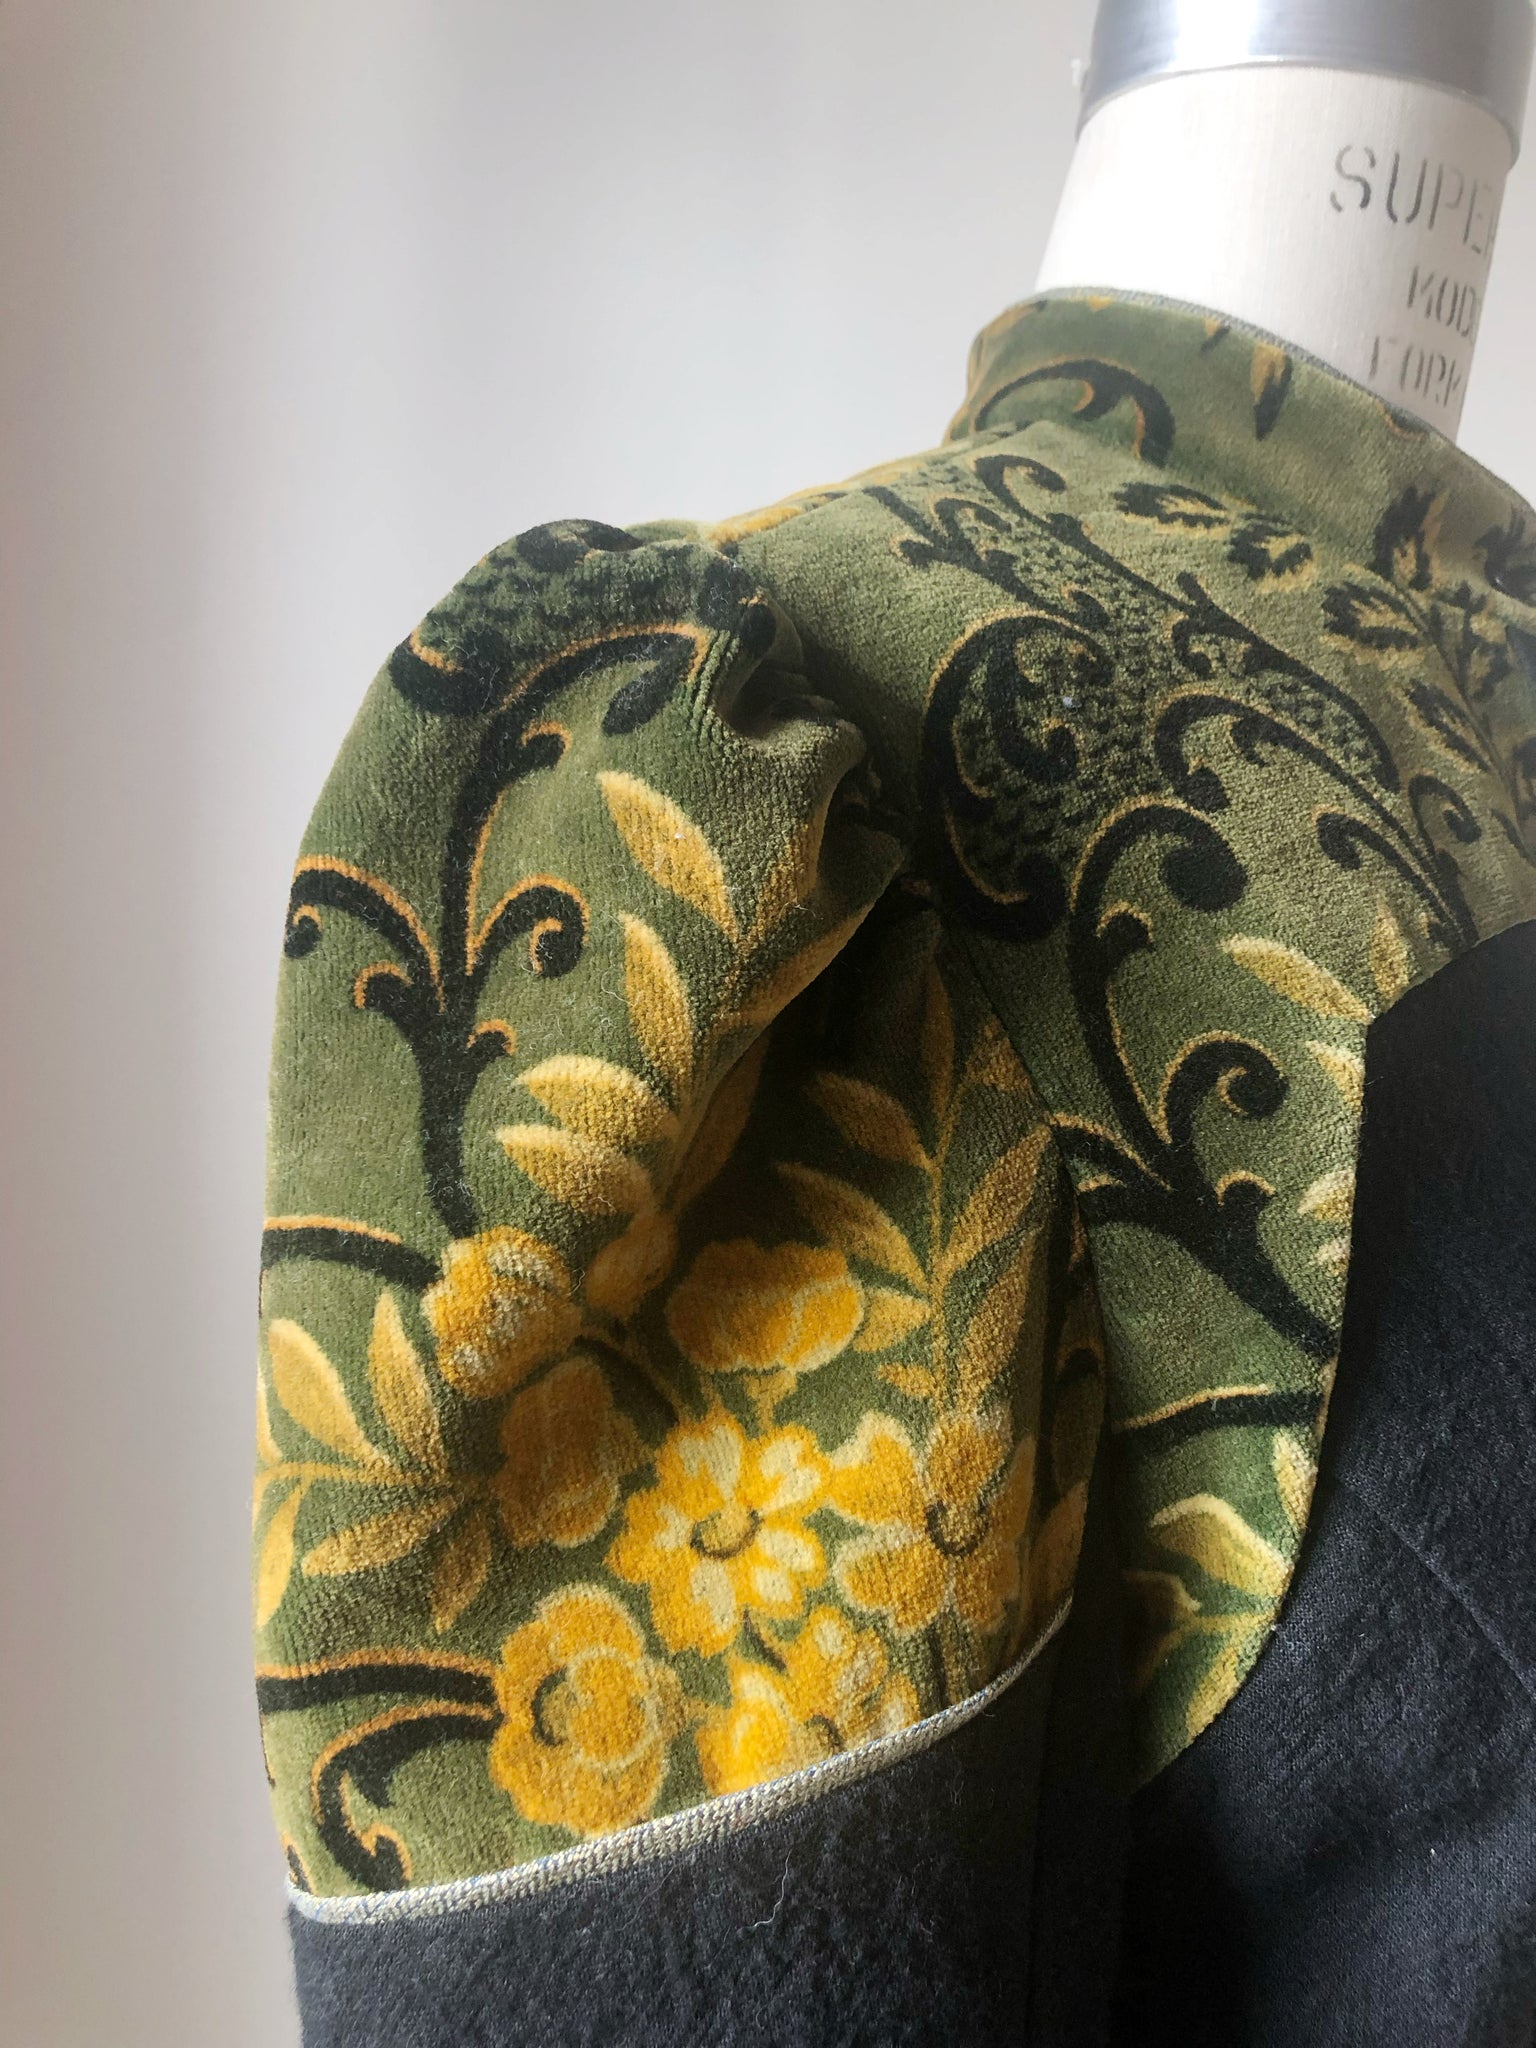 antique velvet and raime lillian shirt